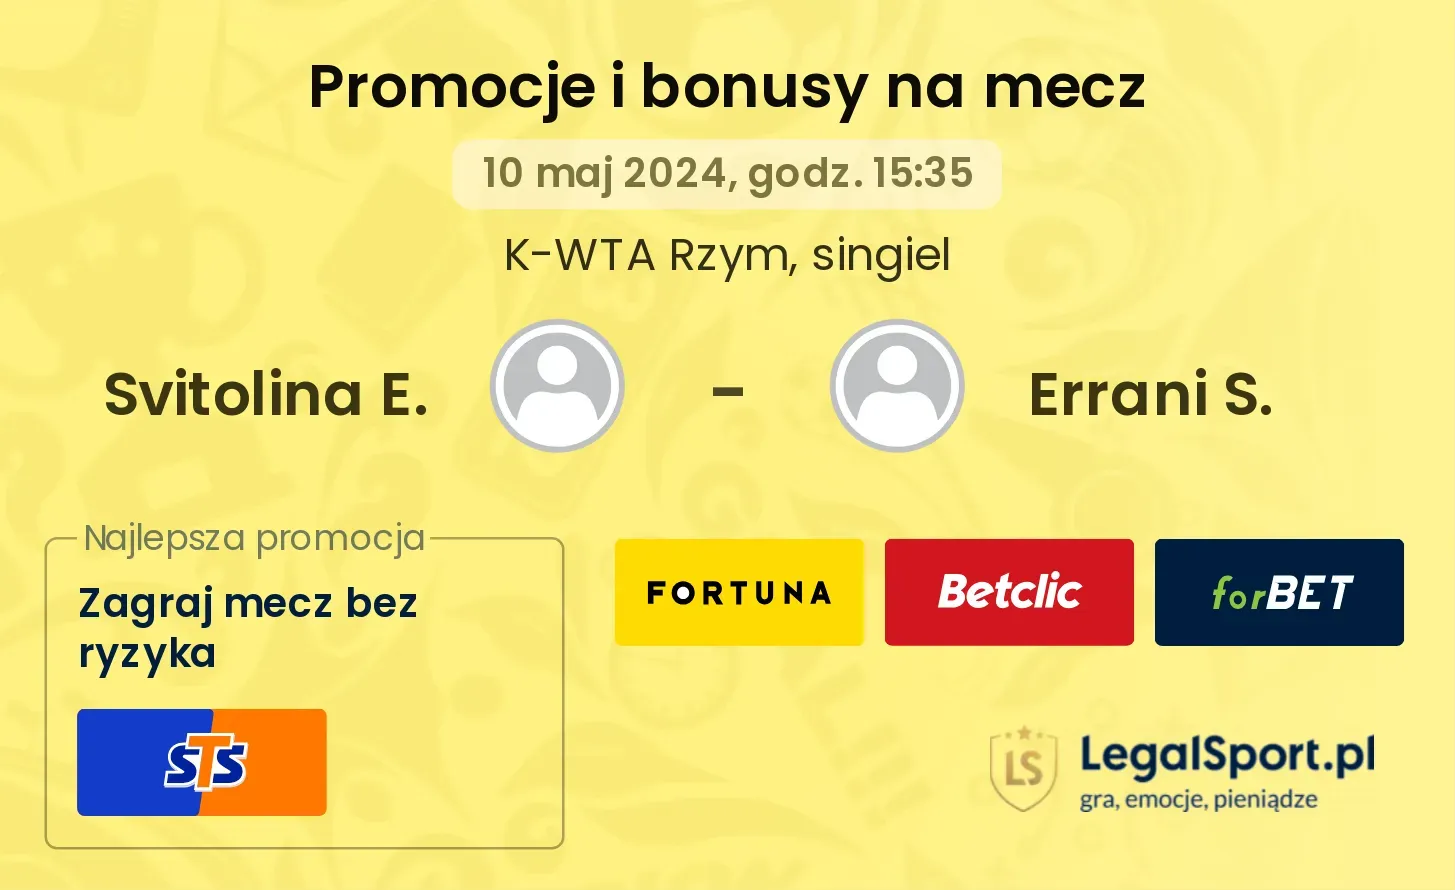 Svitolina E. - Errani S. promocje bonusy na mecz